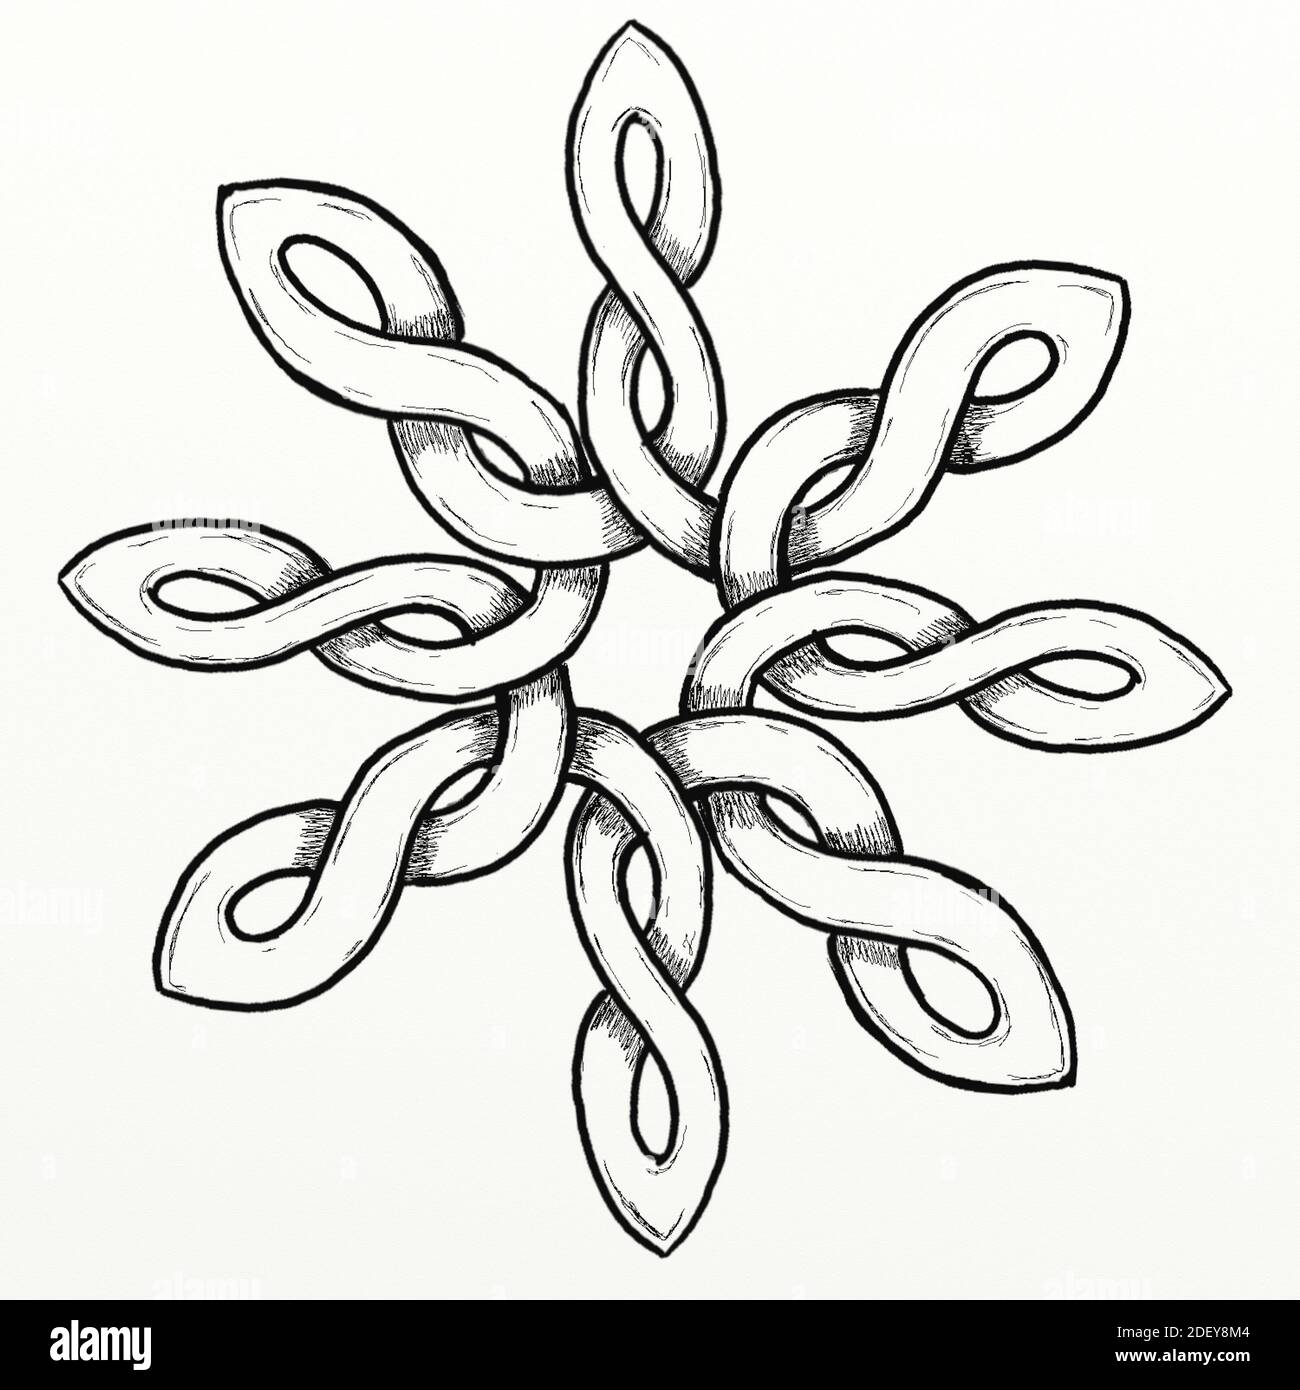 Handgestalteter keltischer Knoten in Form einer stilisierten Rose. Dieser Knoten wurde von Hand vom Künstler entworfen. Stockfoto